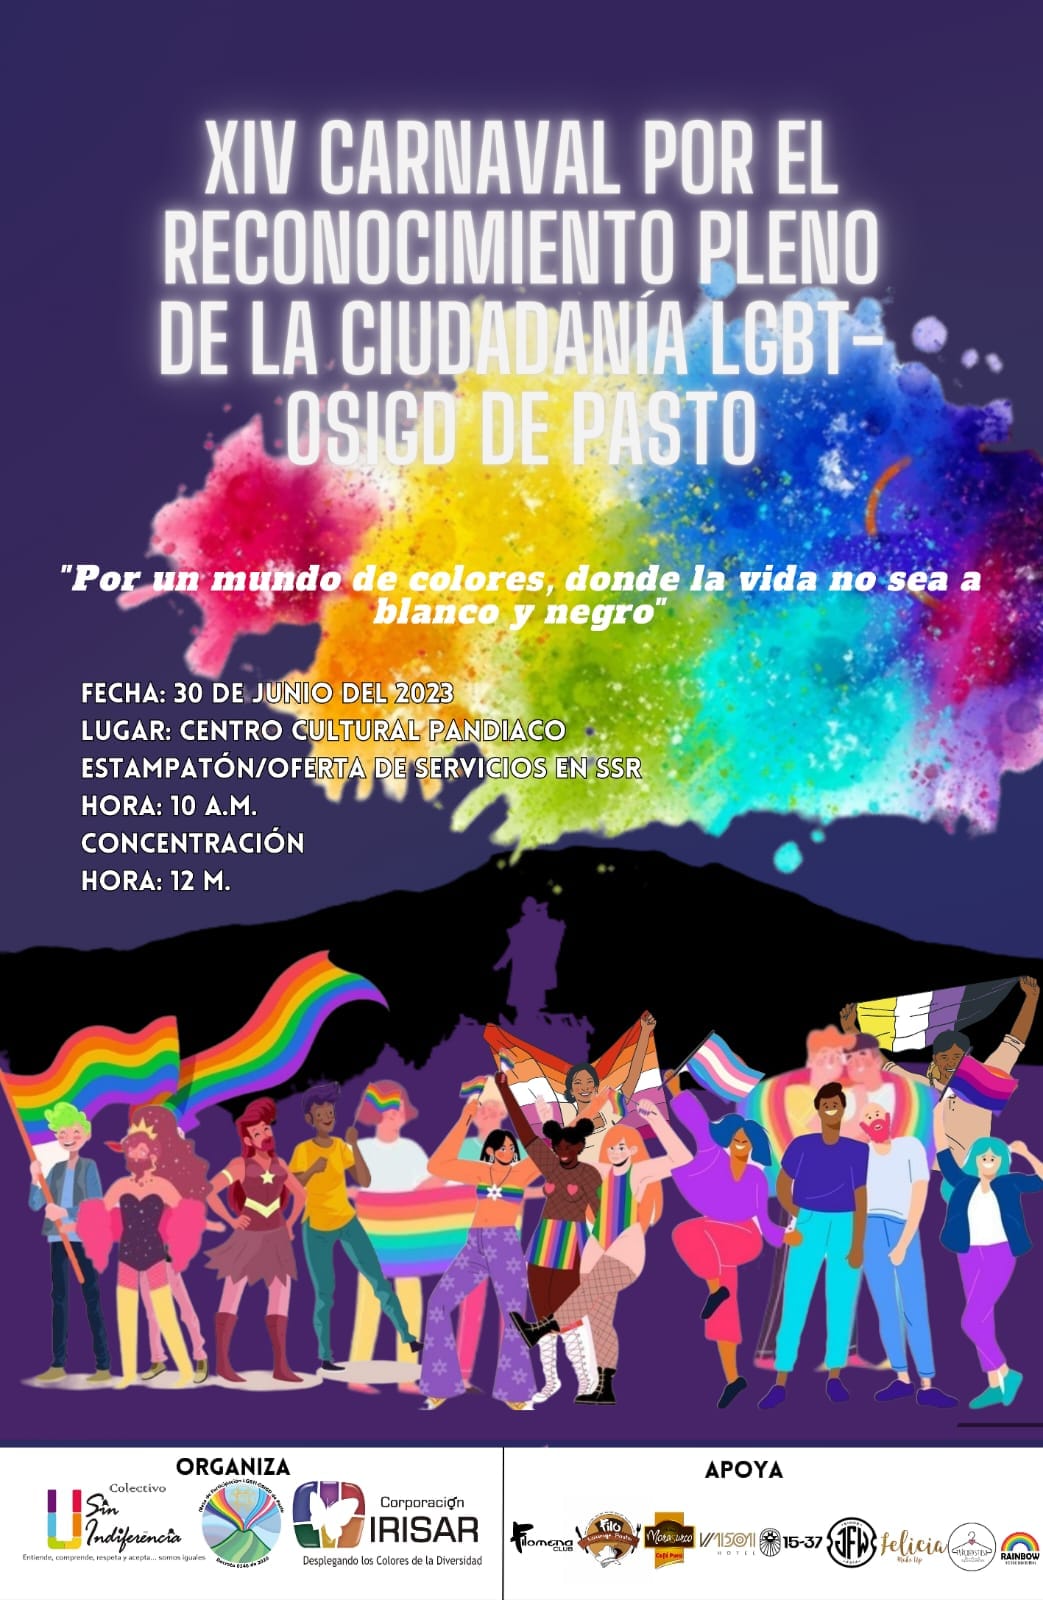 14 Carnaval Por El Reconocimiento Pleno De La Ciudadania Plena LGBT OSIGD De Pasto 2023